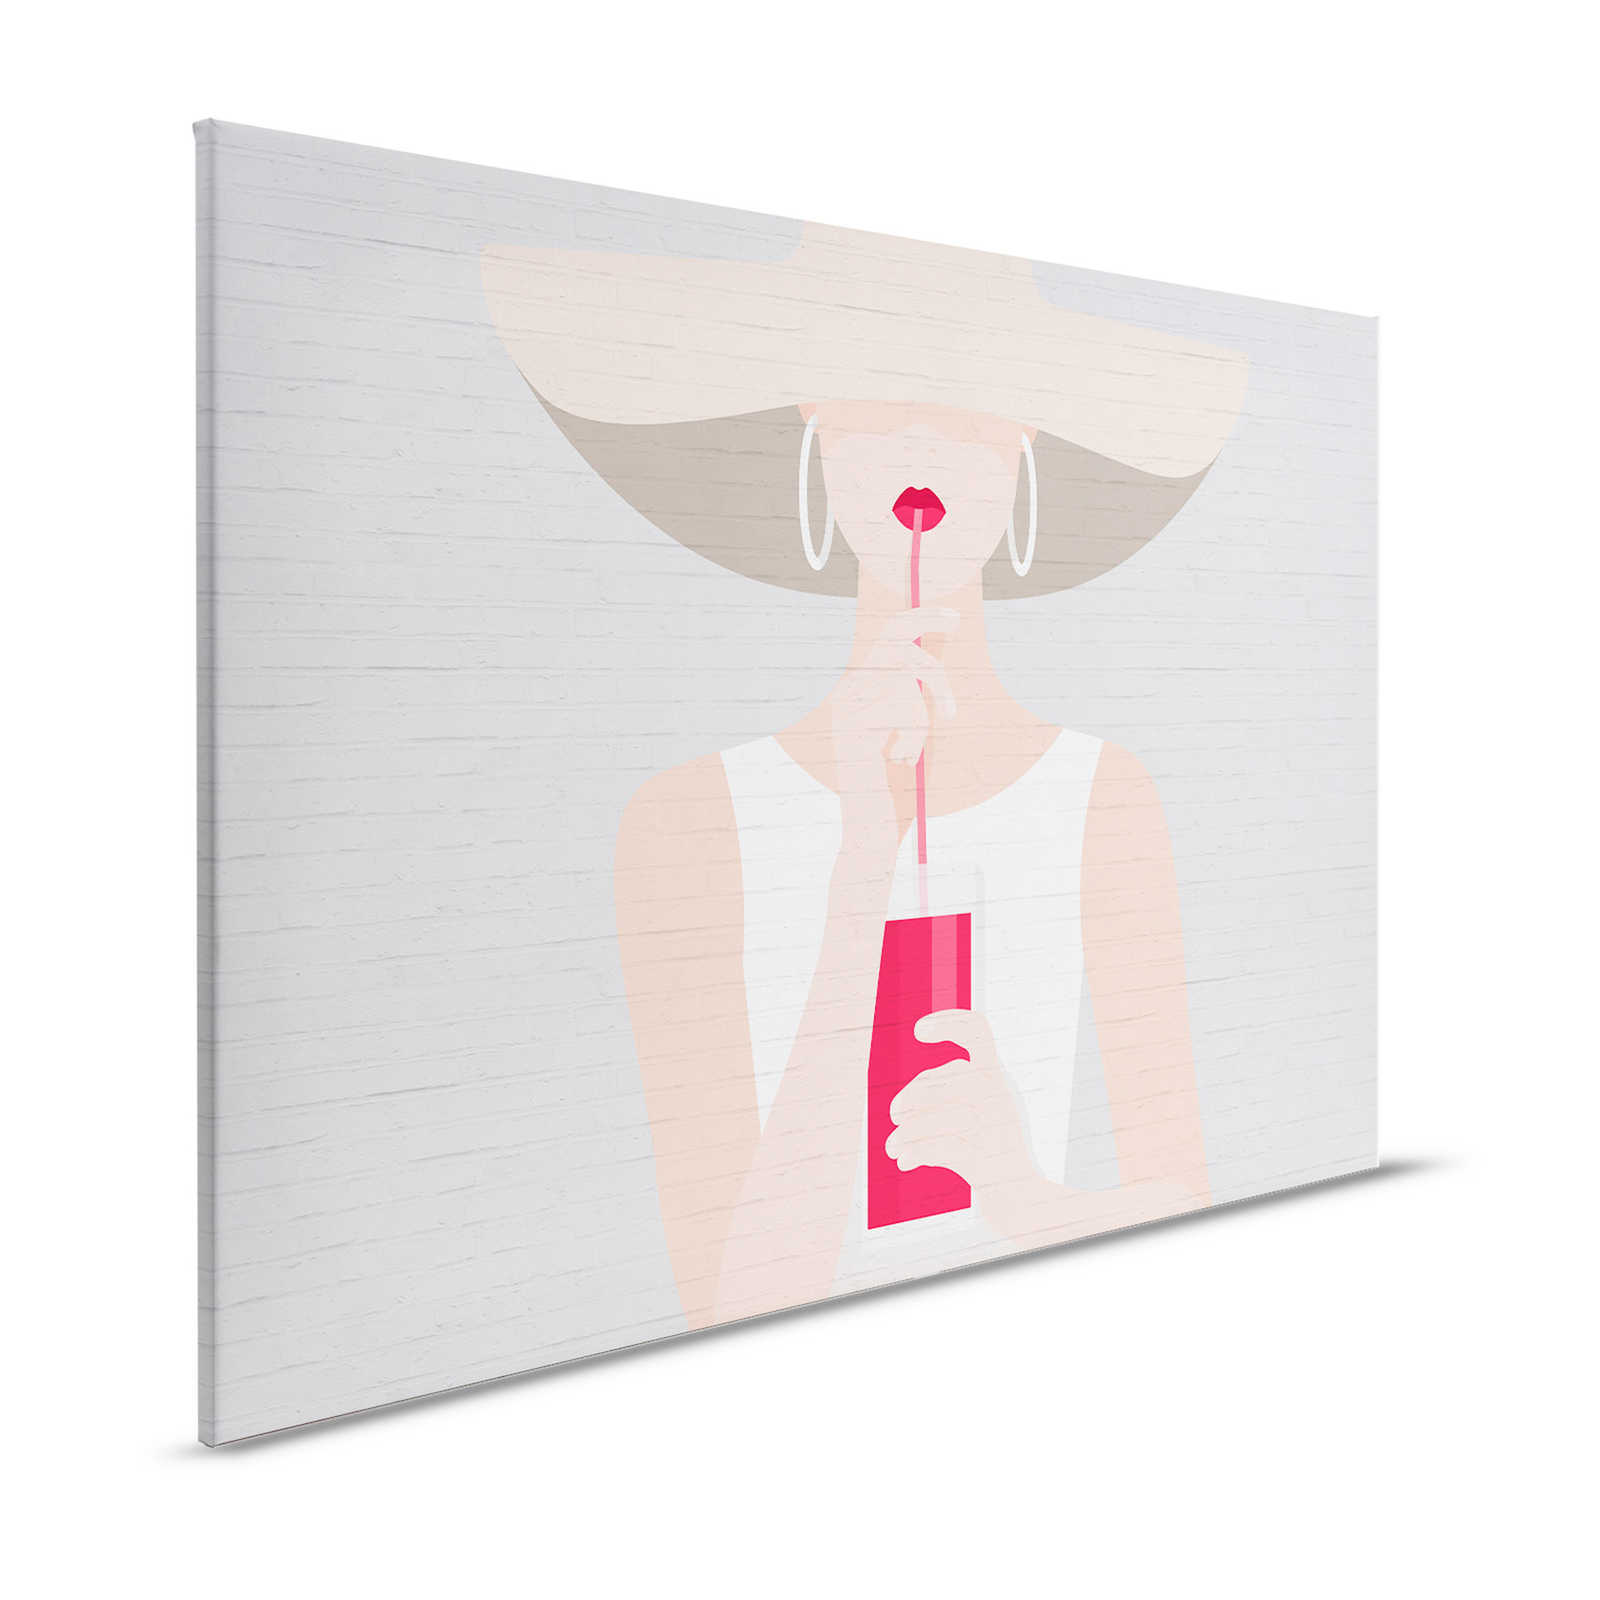 Pintura sobre lienzo con motivos femeninos en look de verano - 1,20 m x 0,80 m
